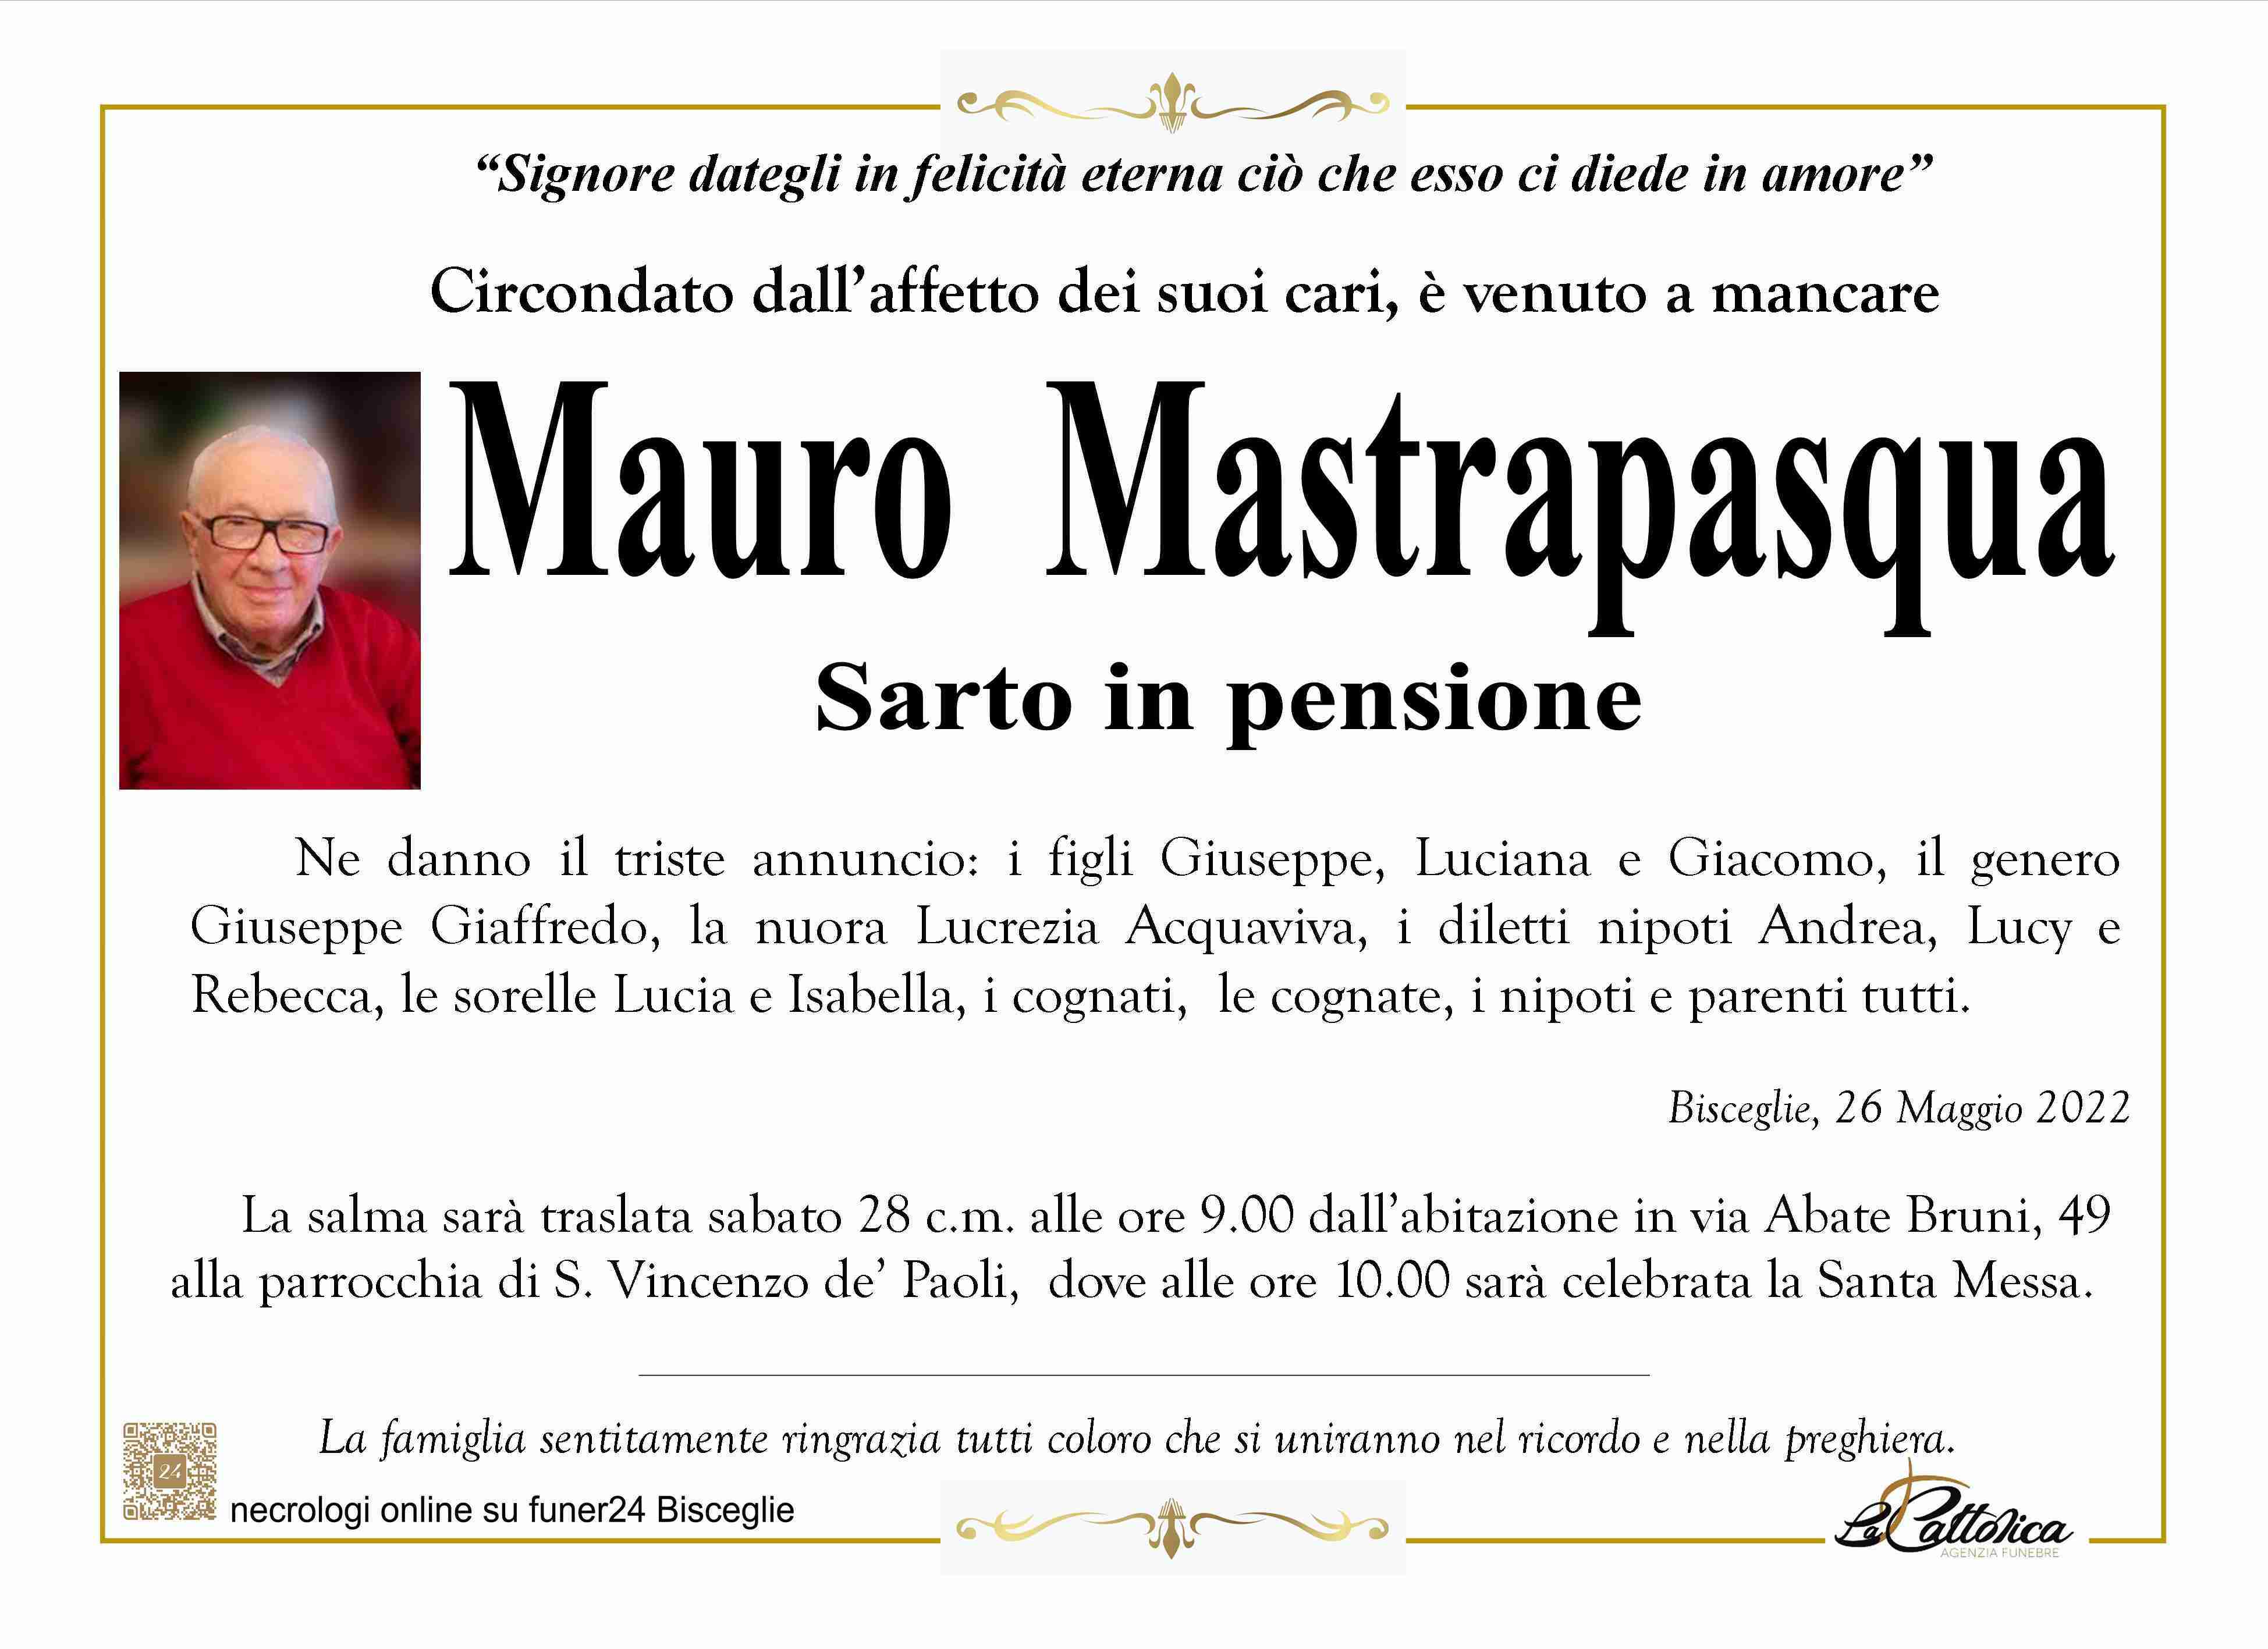 Mauro Mastrapasqua